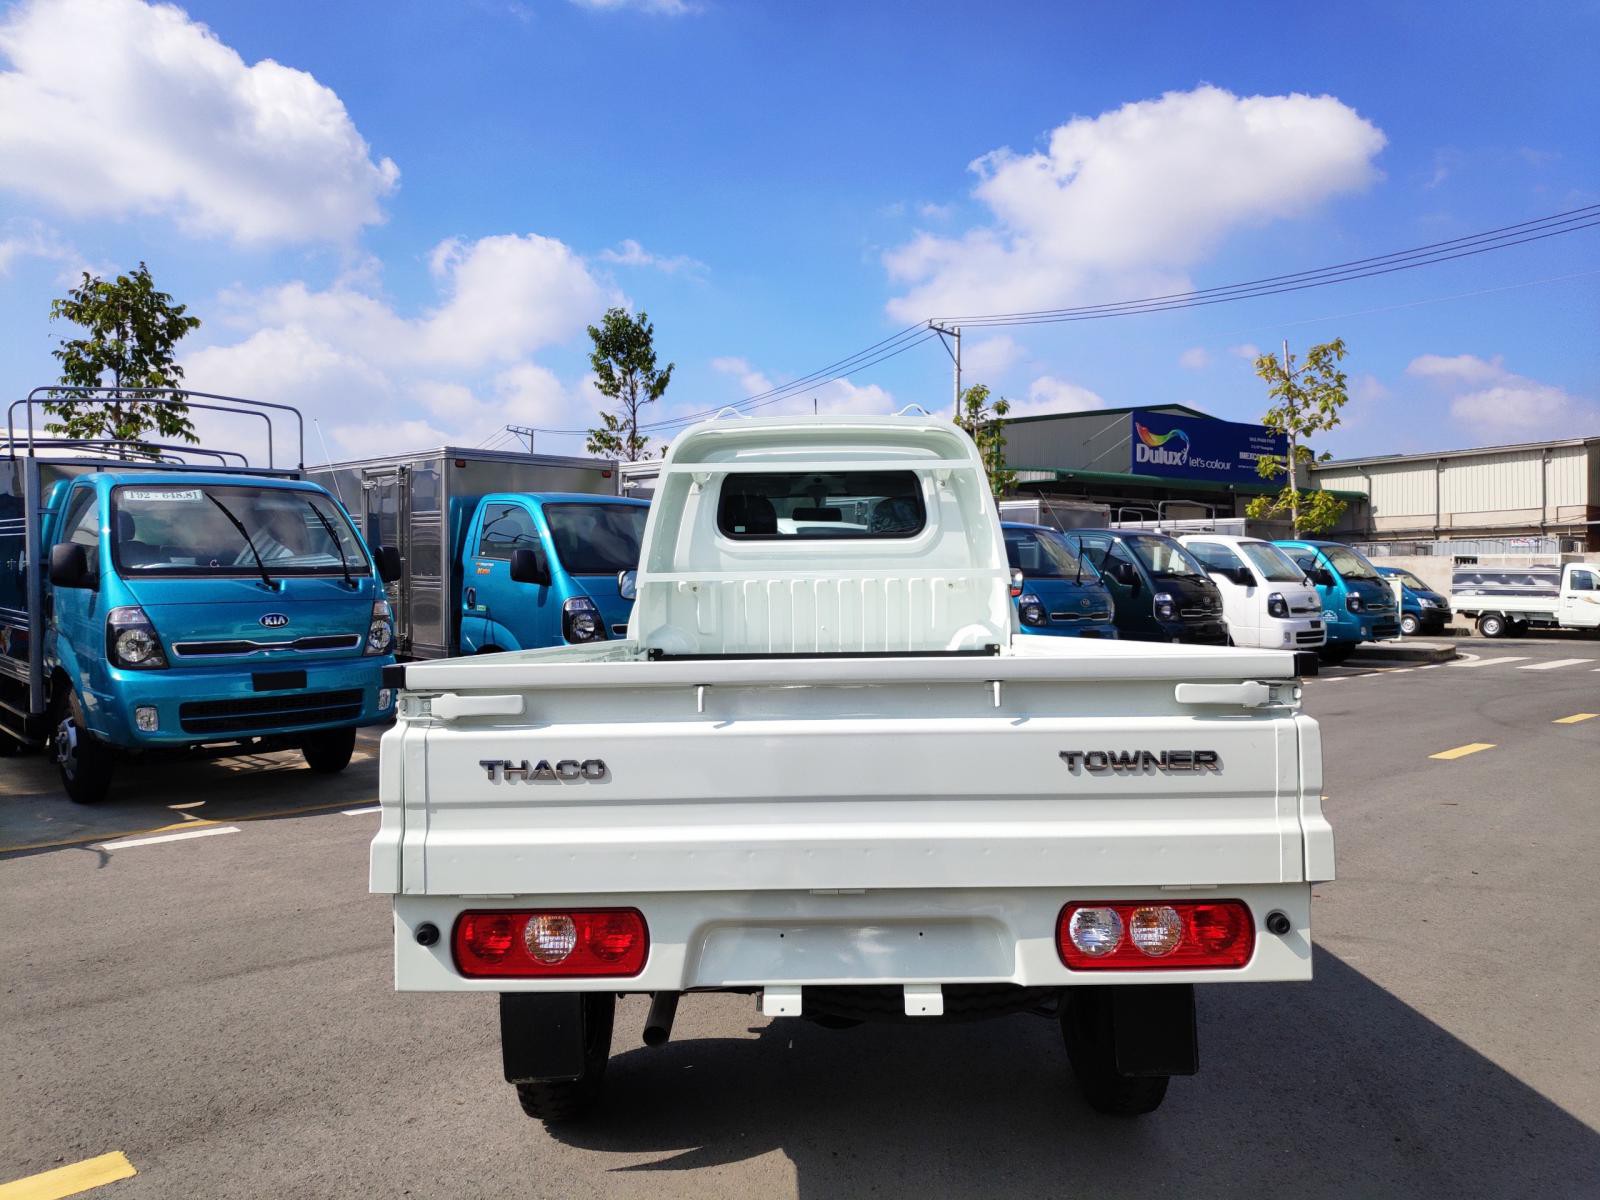 Xe tải Thaco 990KG - Towner990 - thùng lửng 990kg - hỗ trợ vay 70%